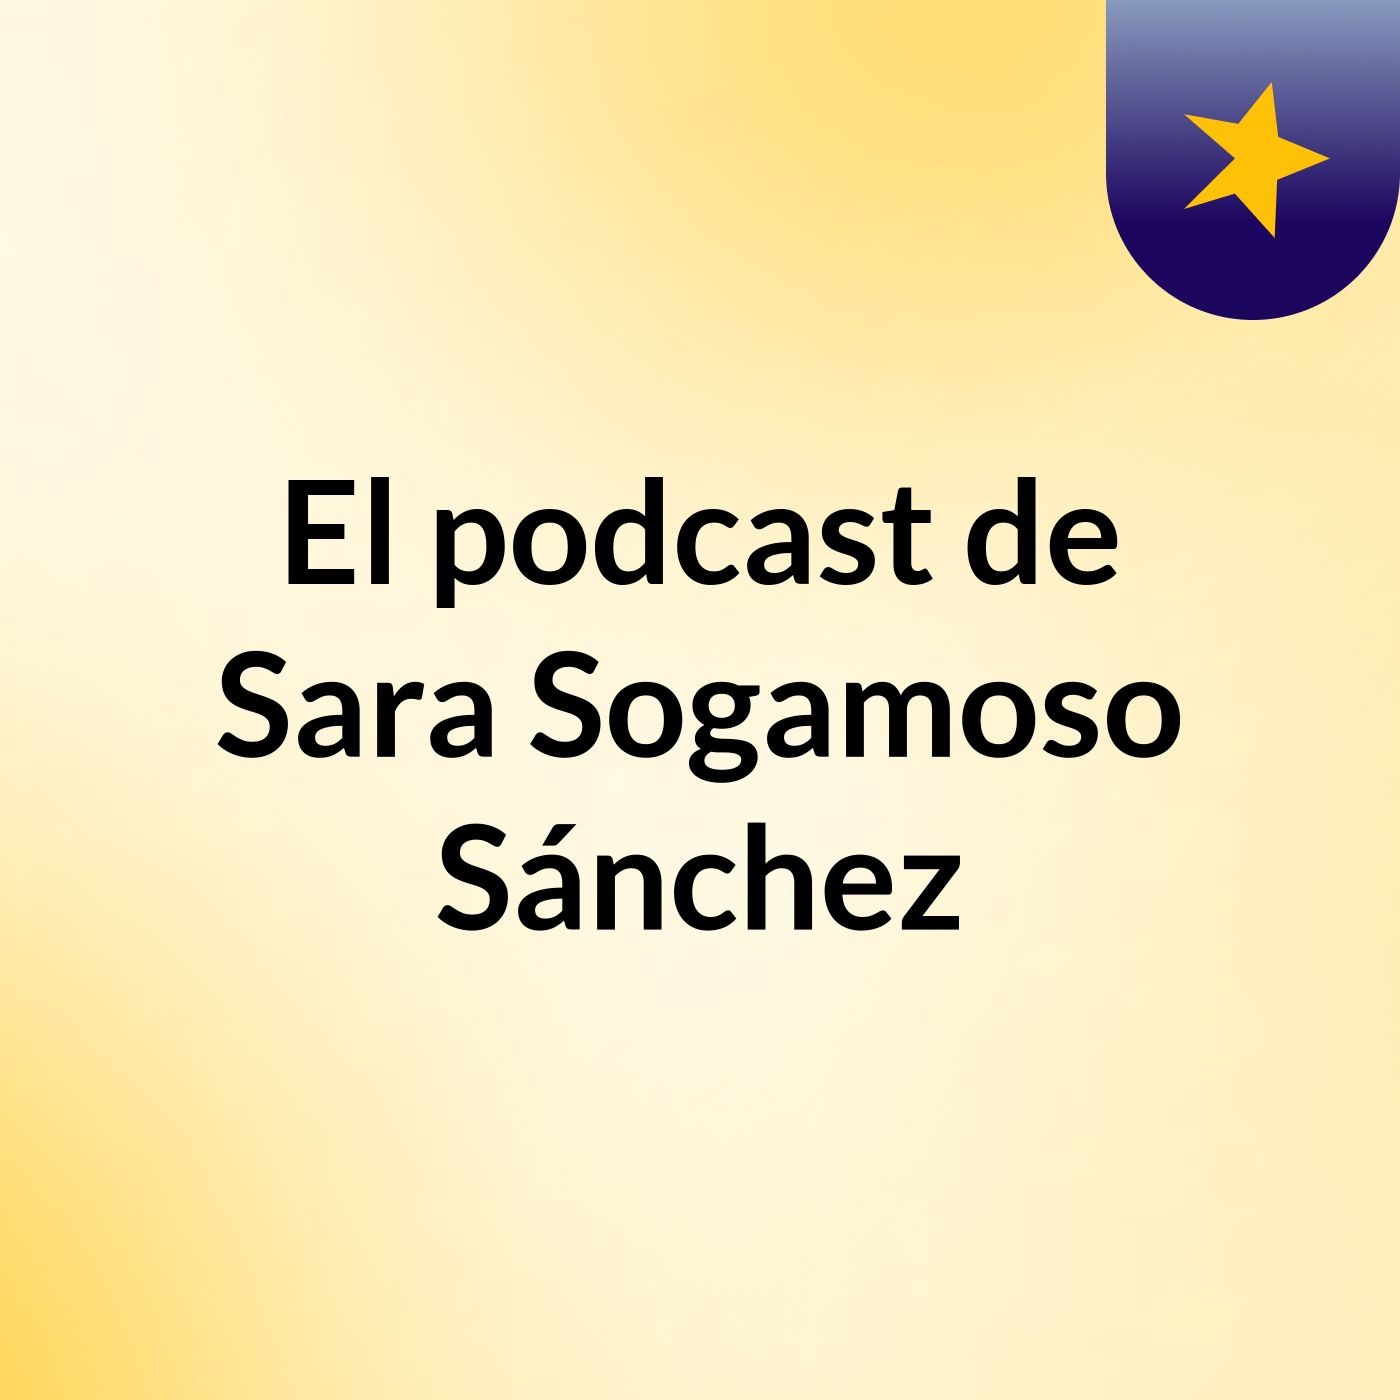 Episodio 6 - El podcast de Sara Sogamoso Sánchez